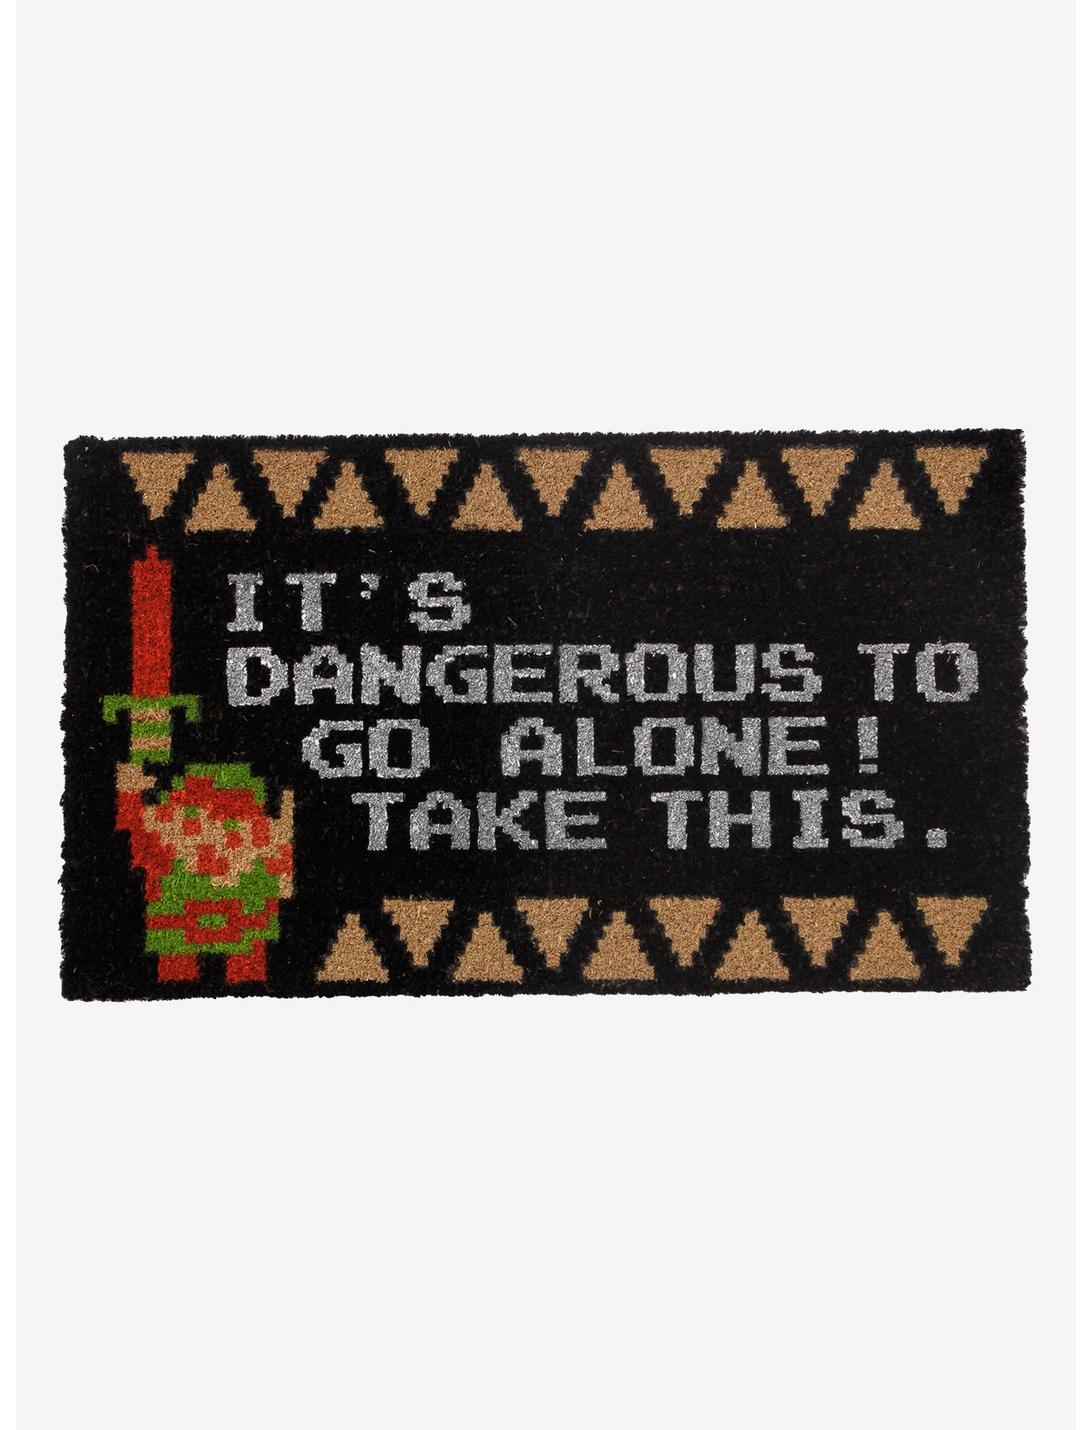 The Legend Of Zelda It's Dangerous Doormat, , hi-res